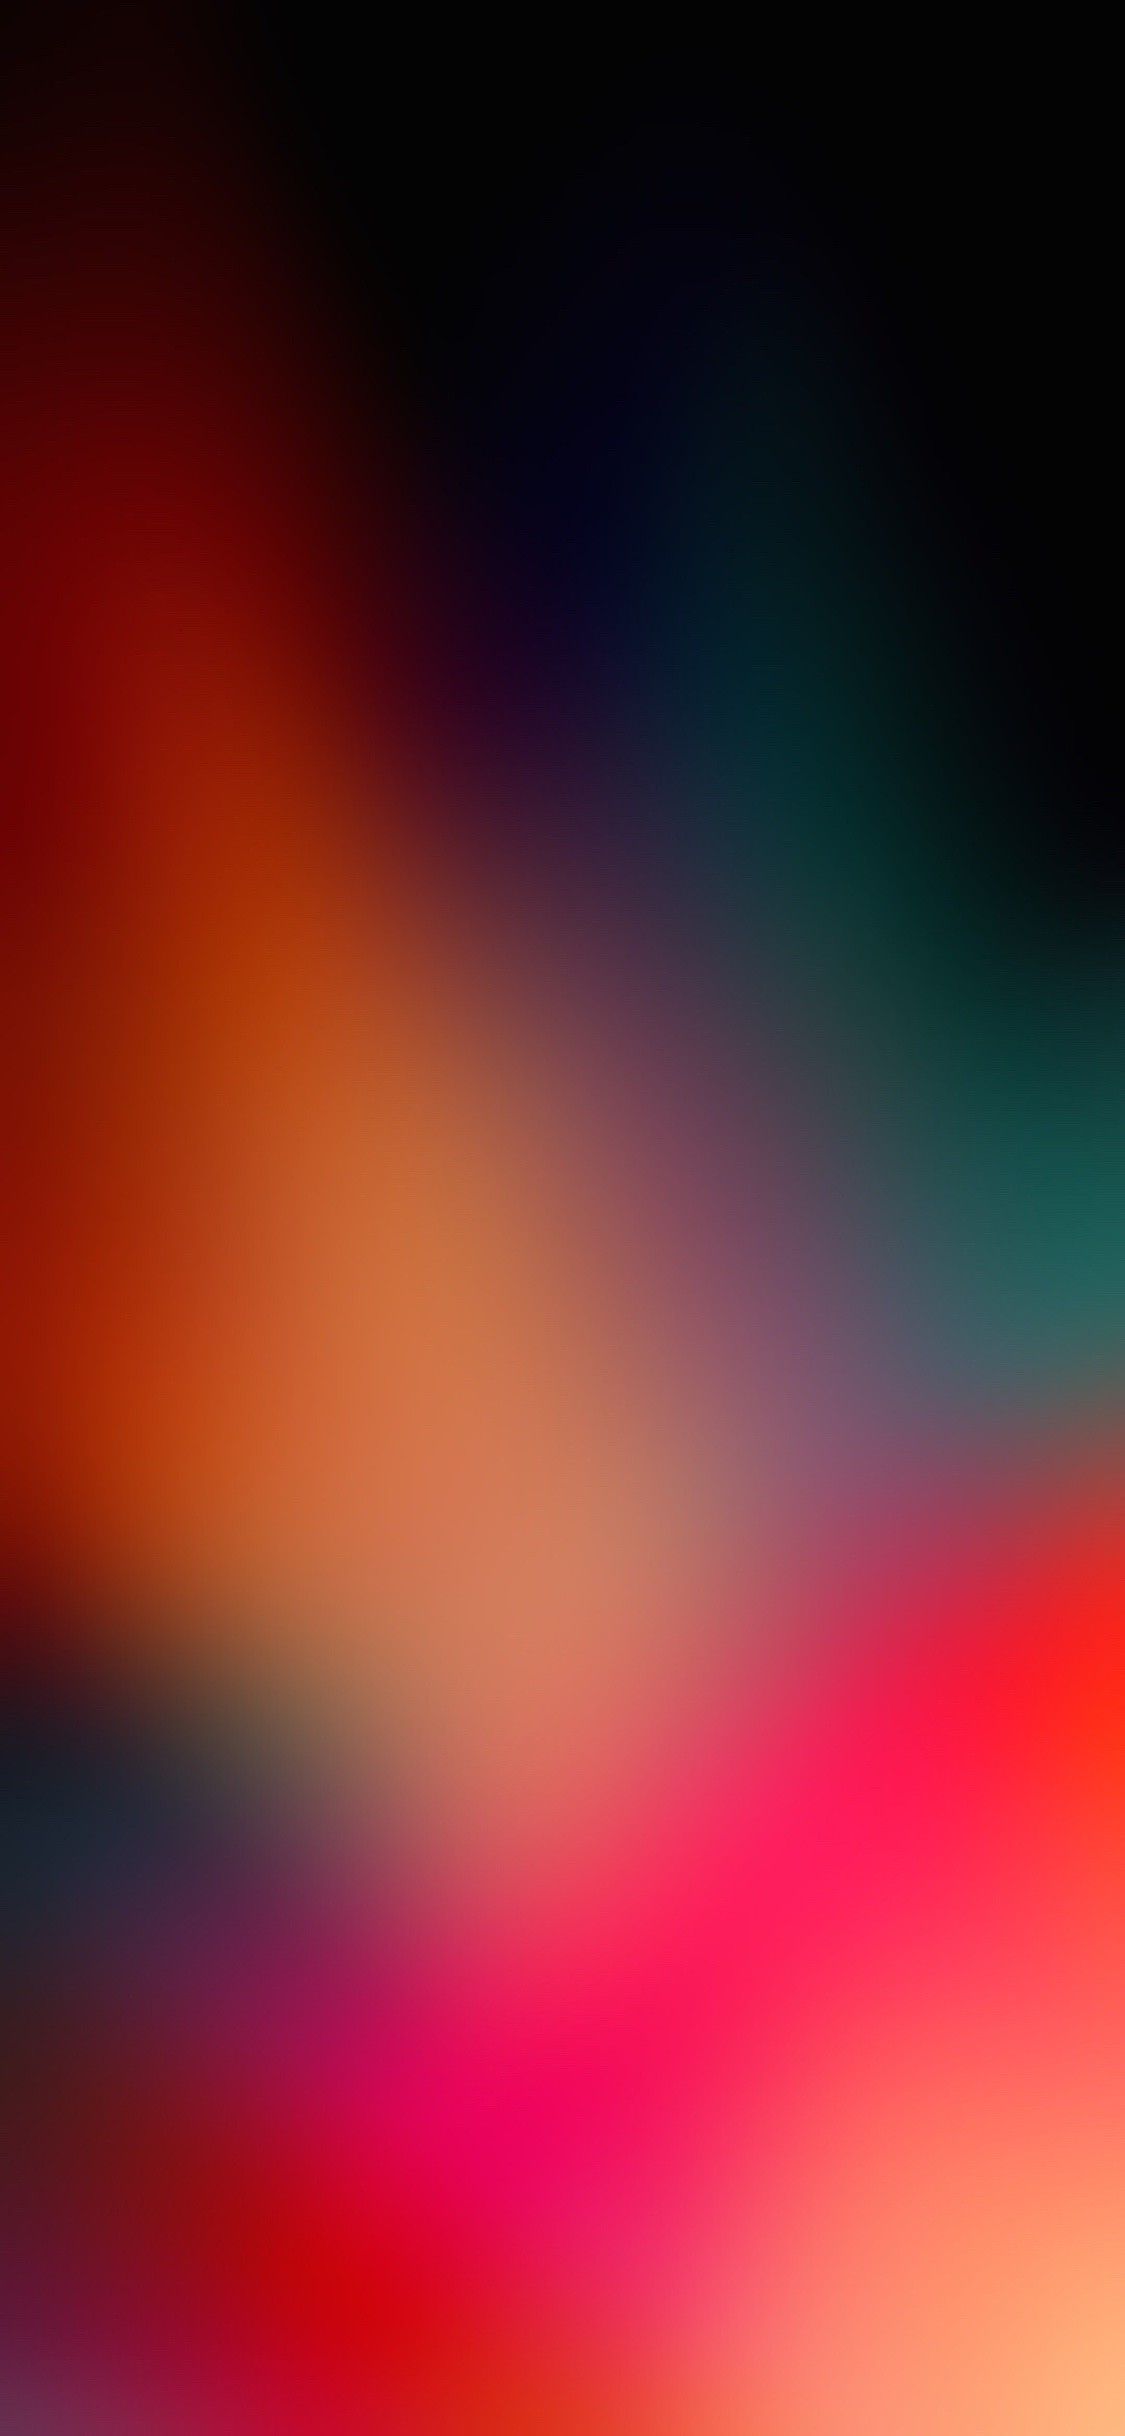 Wallpaper Background Colour Blur. iPhone wallpaper blur, Abstract iphone wallpaper, iPhone wallpaper gradient